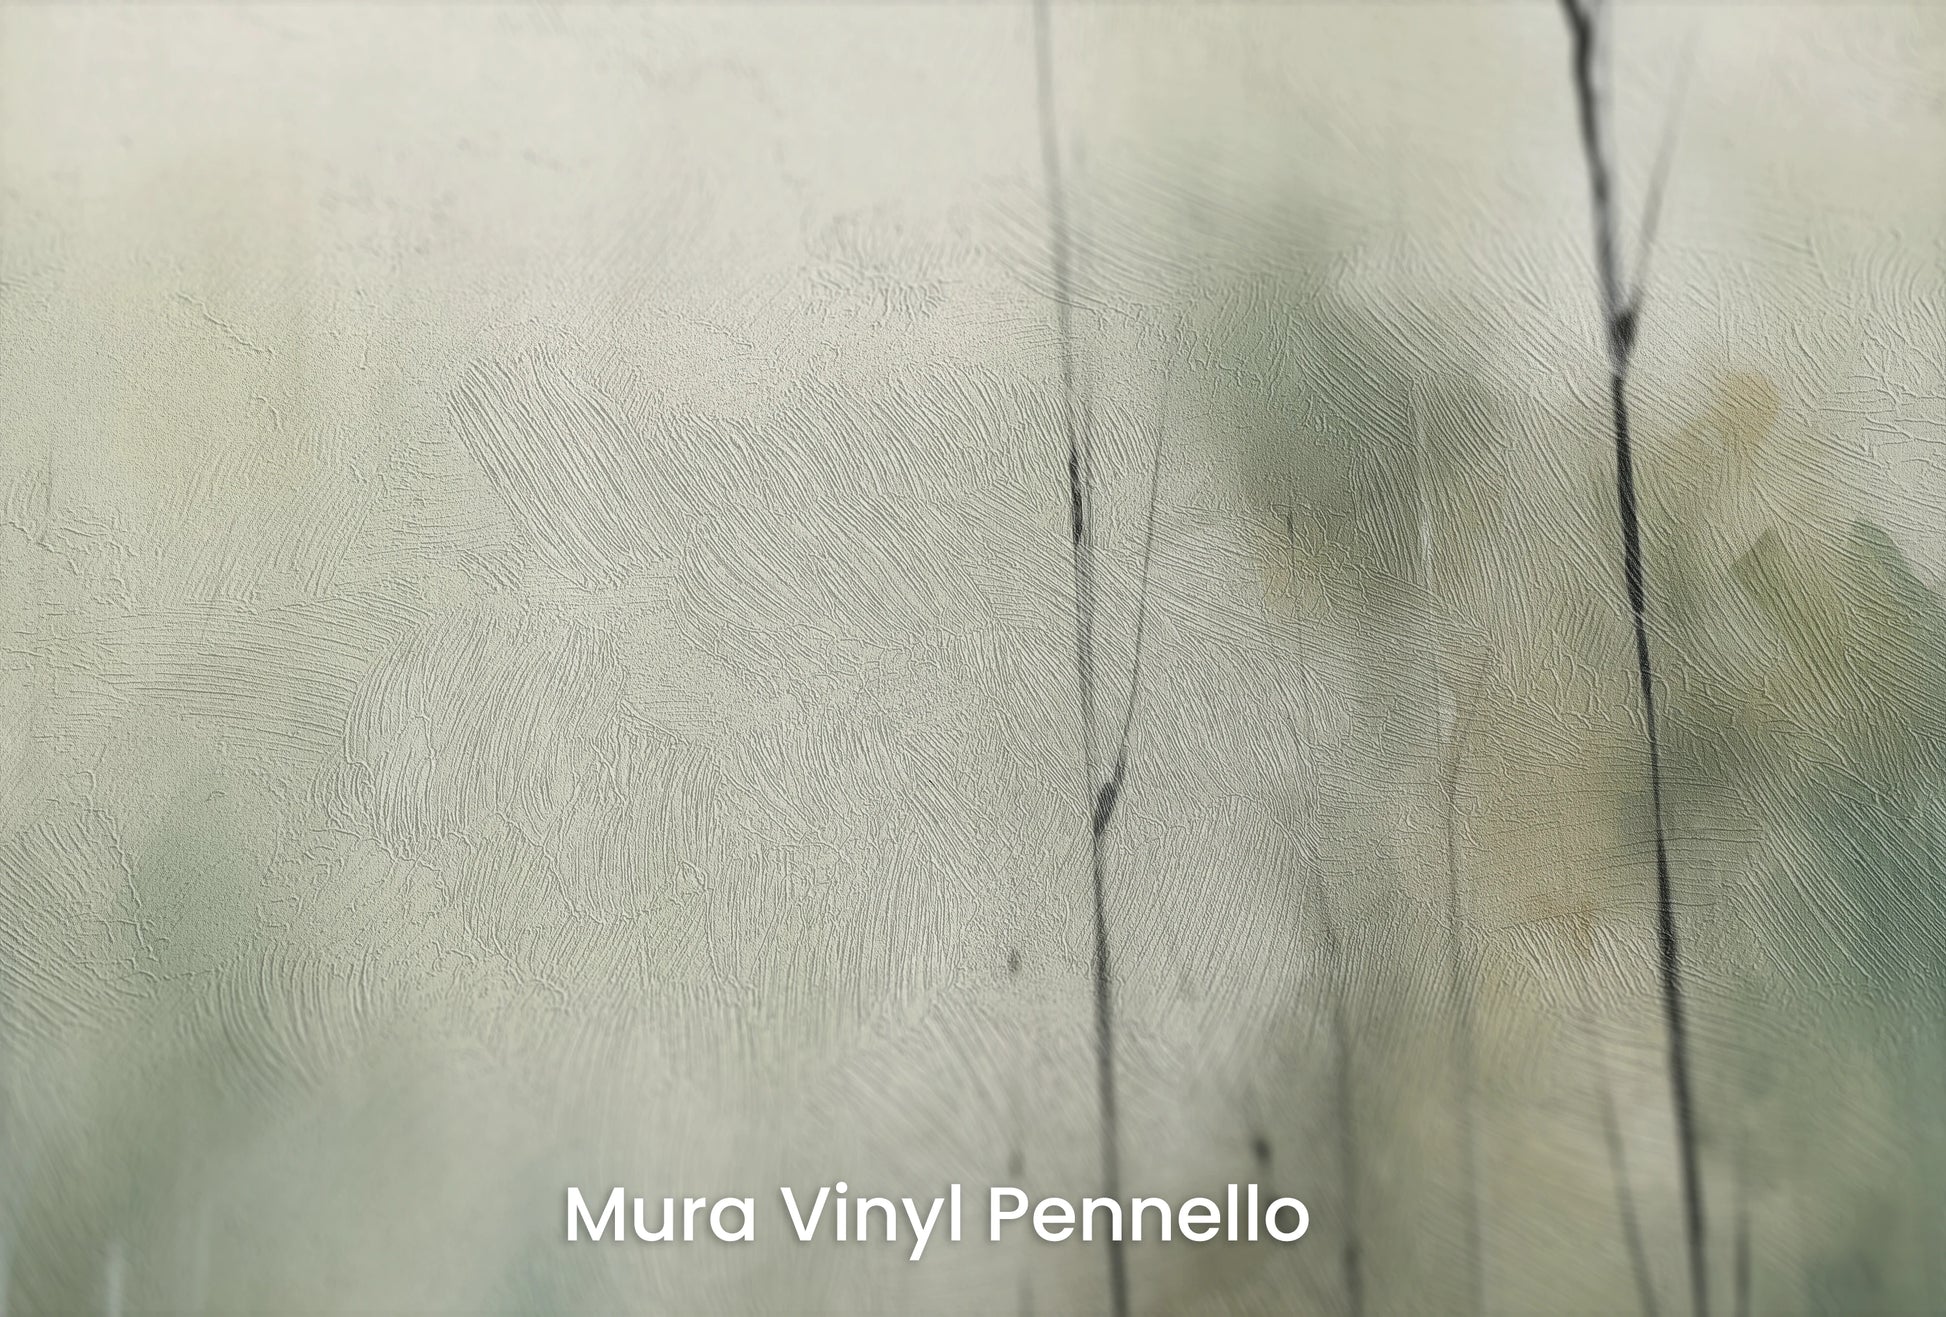 Zbliżenie na artystyczną fototapetę o nazwie Mgielne Drzewa na podłożu Mura Vinyl Pennello - faktura pociągnięć pędzla malarskiego.